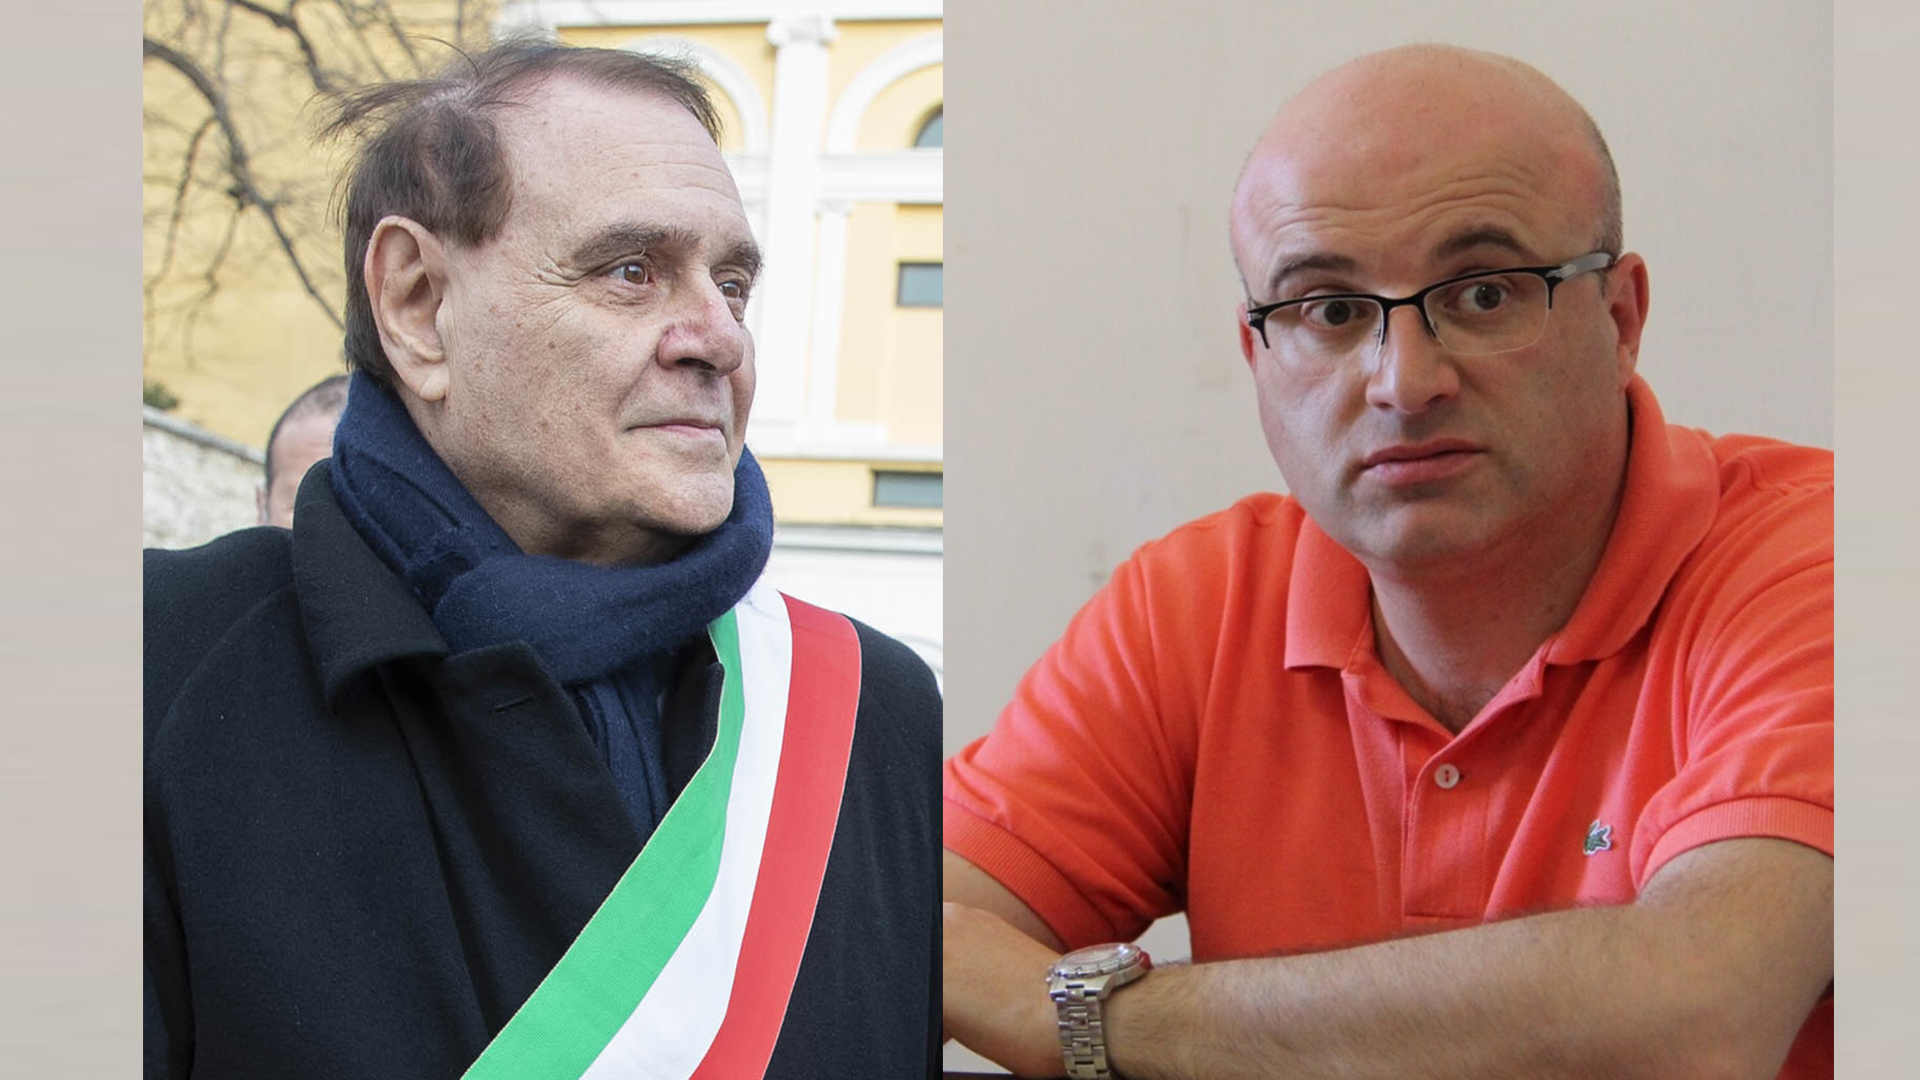 Fabio Solano: addio a Mastella, aderisce a Forza Italia: “io uomo libero da ogni condizionamento”